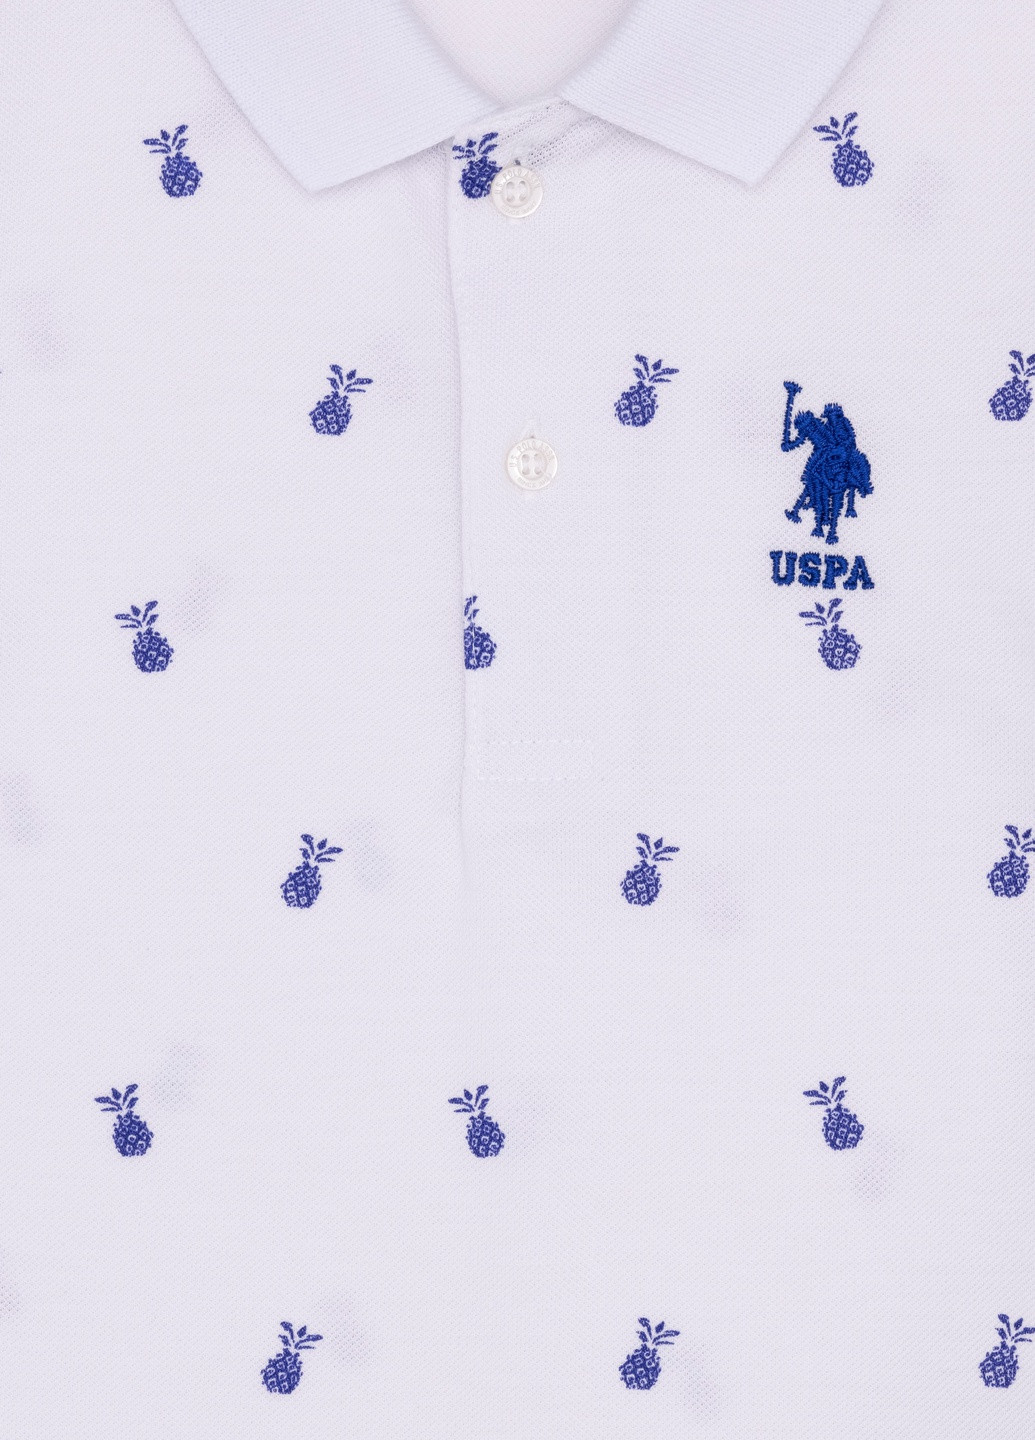 Белая детская футболка-футболка u.s/ polo assn. на мальчика для мальчика U.S. Polo Assn.